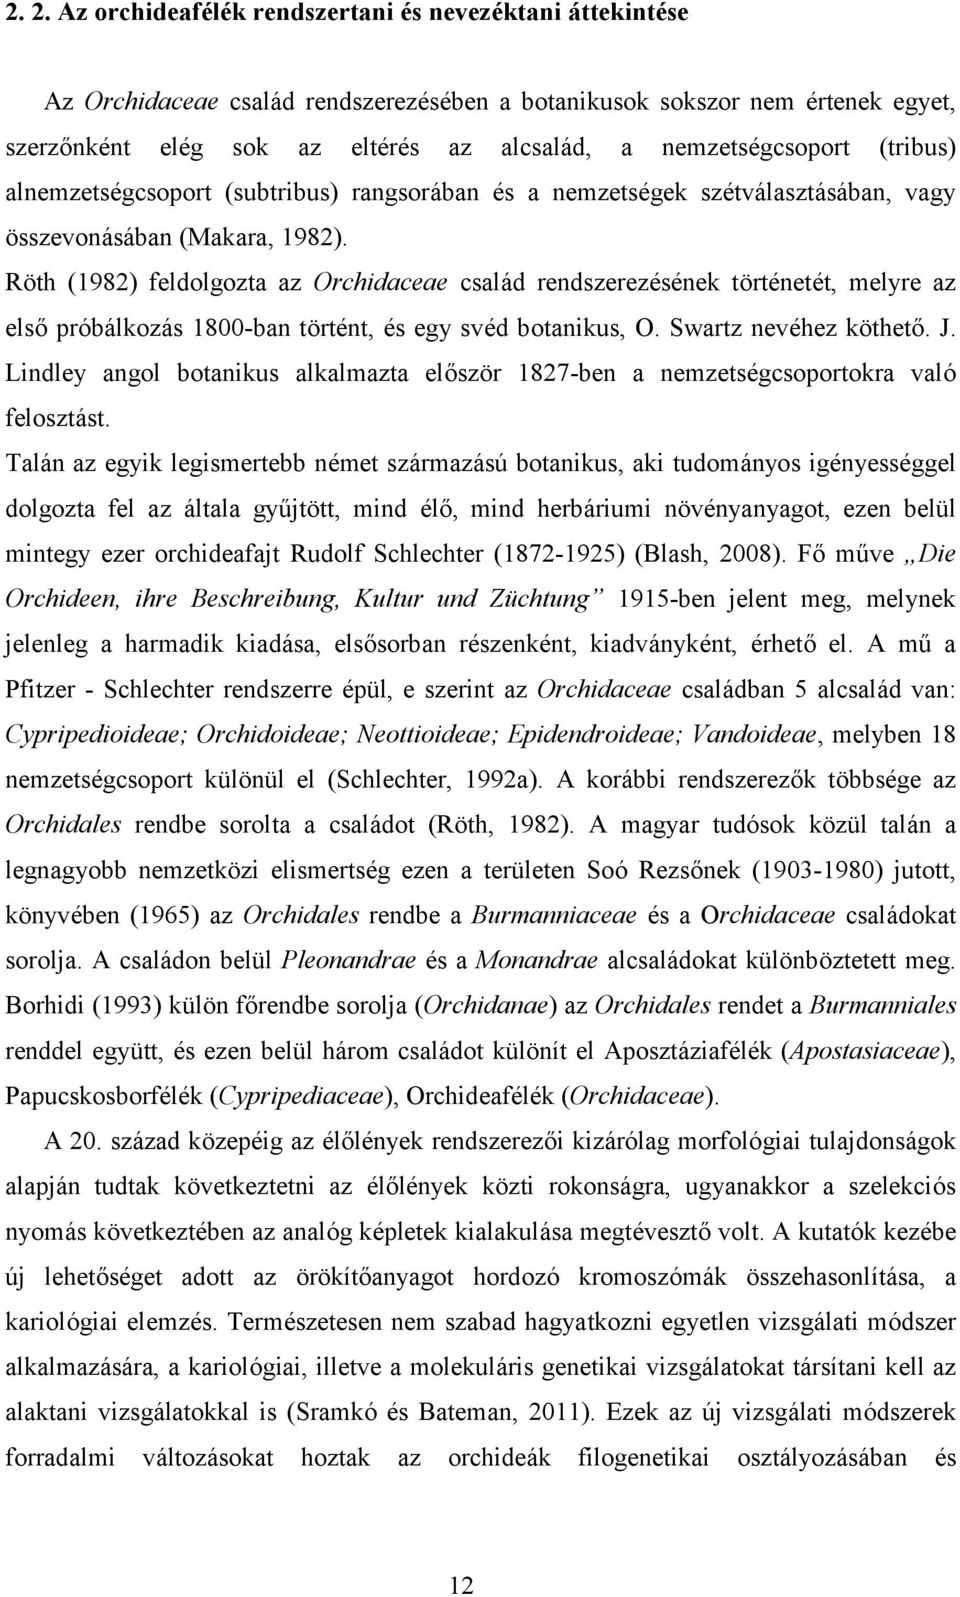 Röth (1982) feldolgozta az Orchidaceae család rendszerezésének történetét, melyre az első próbálkozás 18-ban történt, és egy svéd botanikus, O. Swartz nevéhez köthető. J.